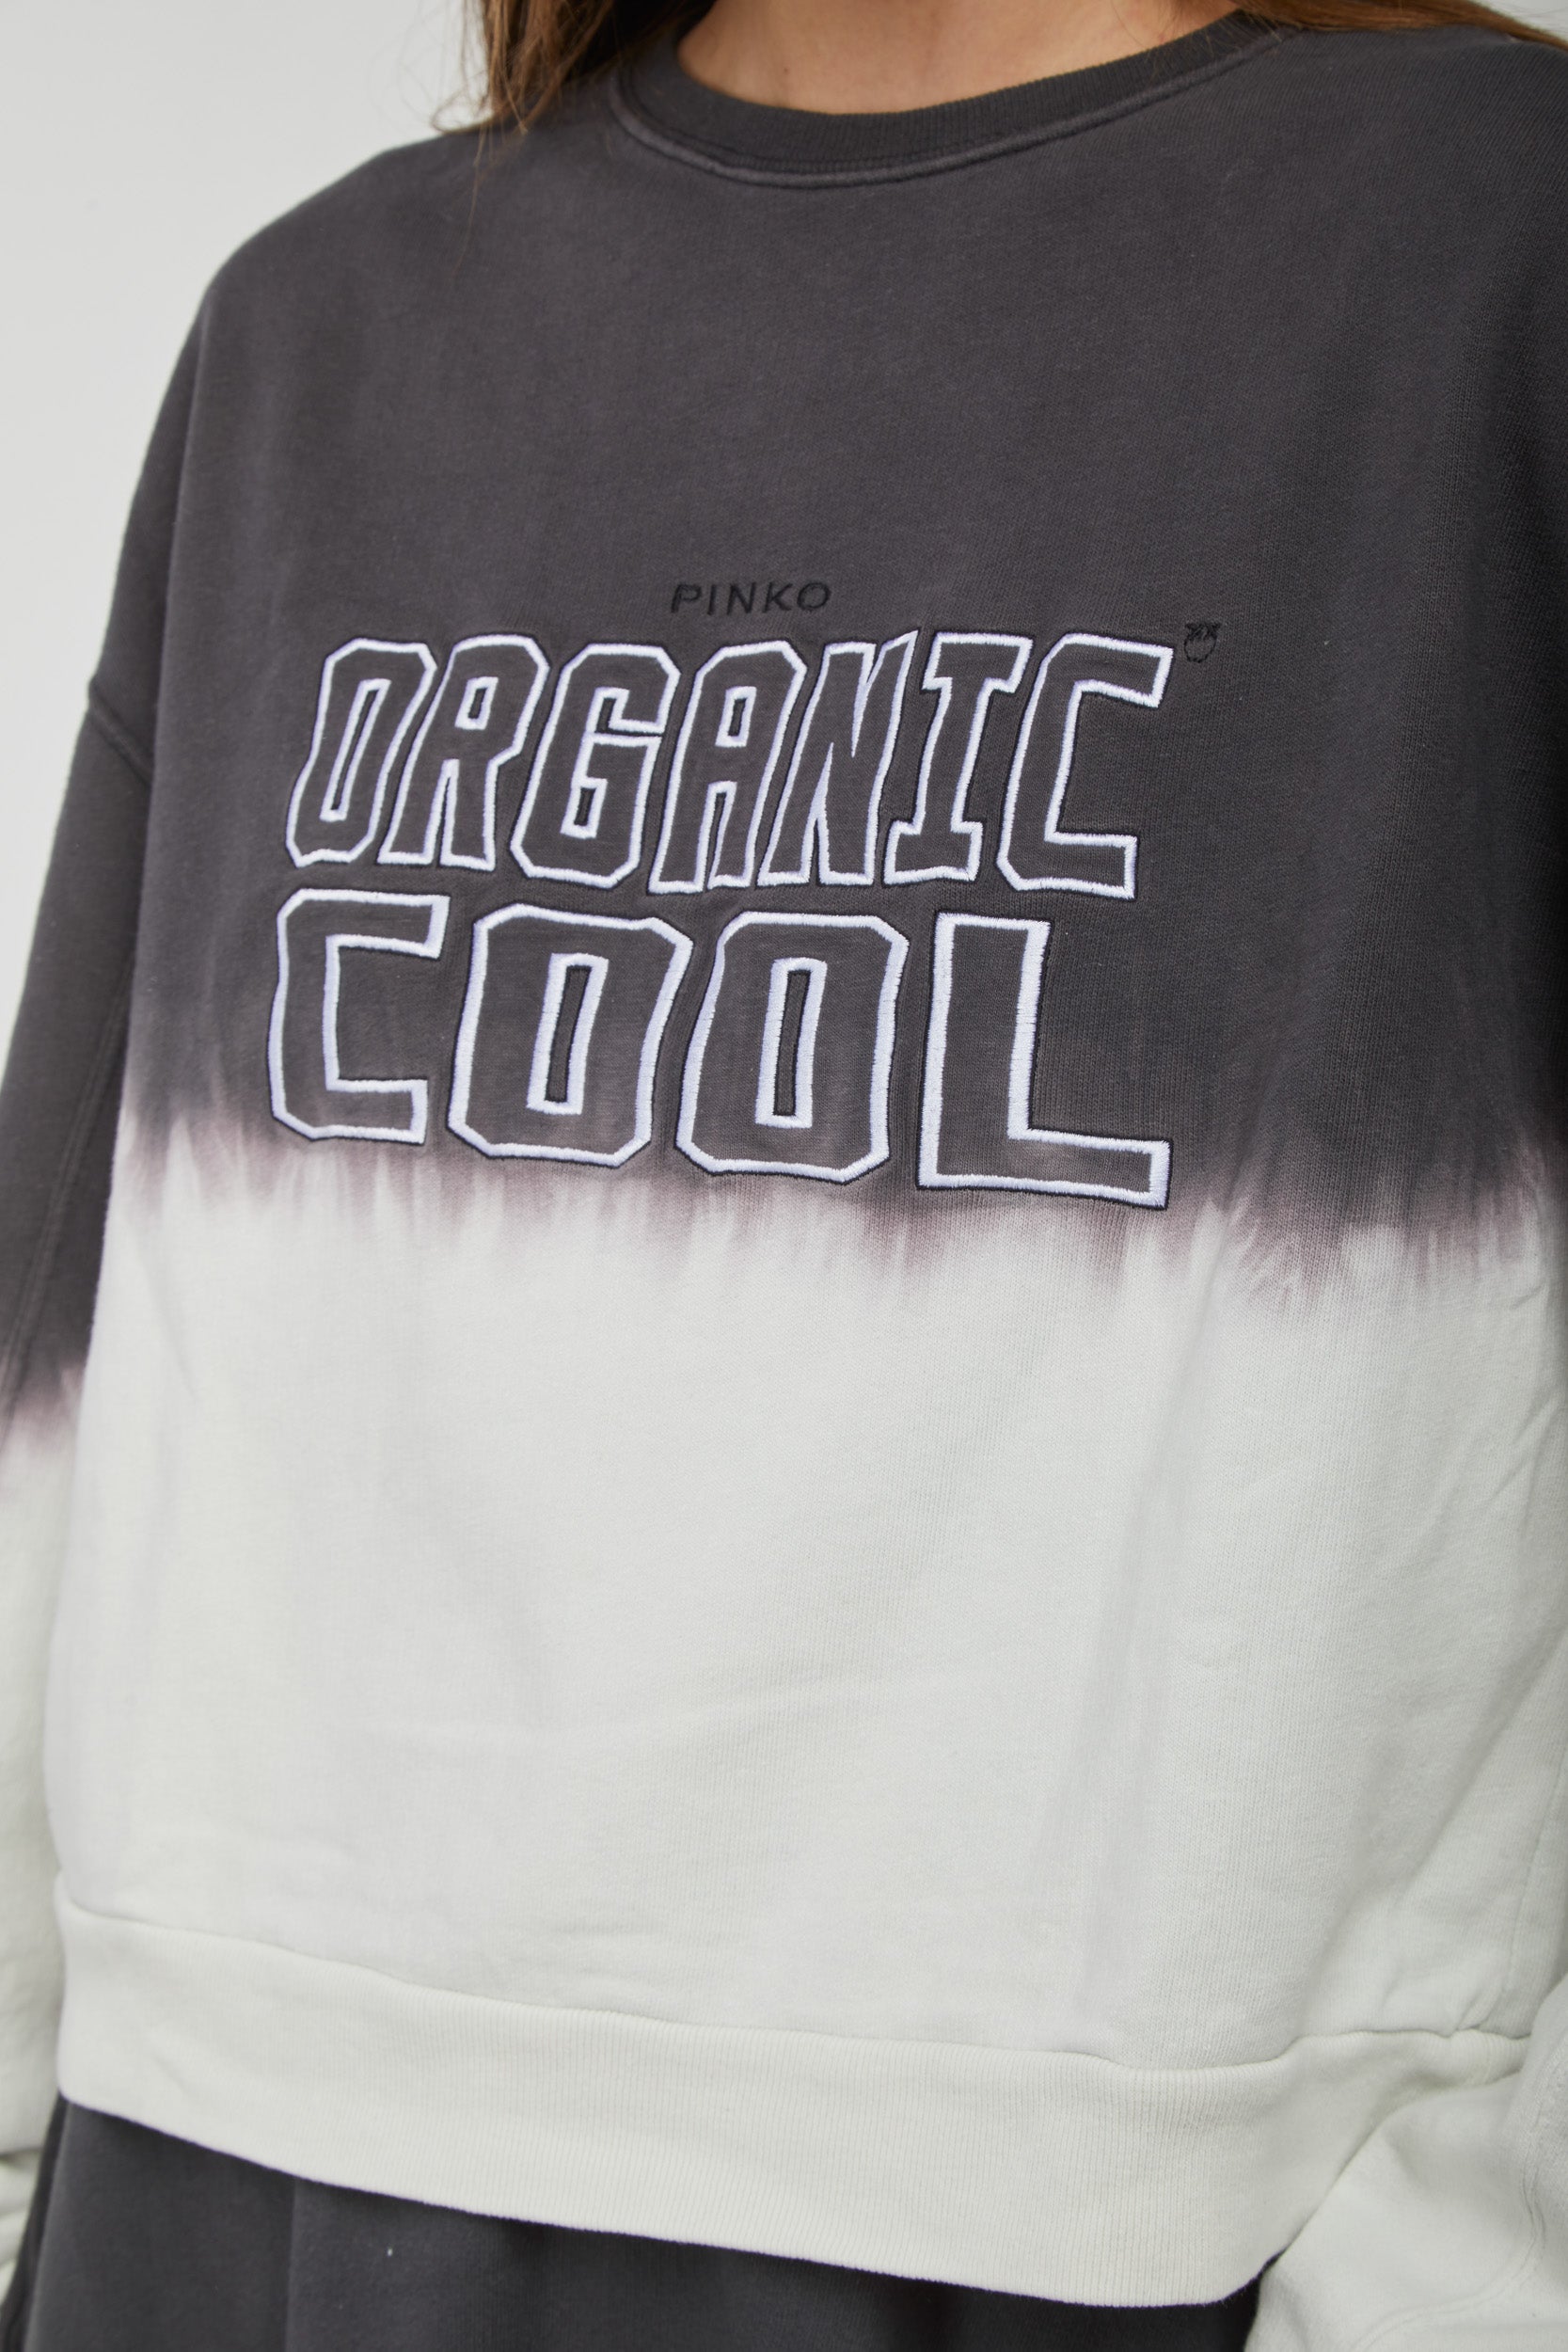 PINKO "Organic Cool" Over Sweatshirt